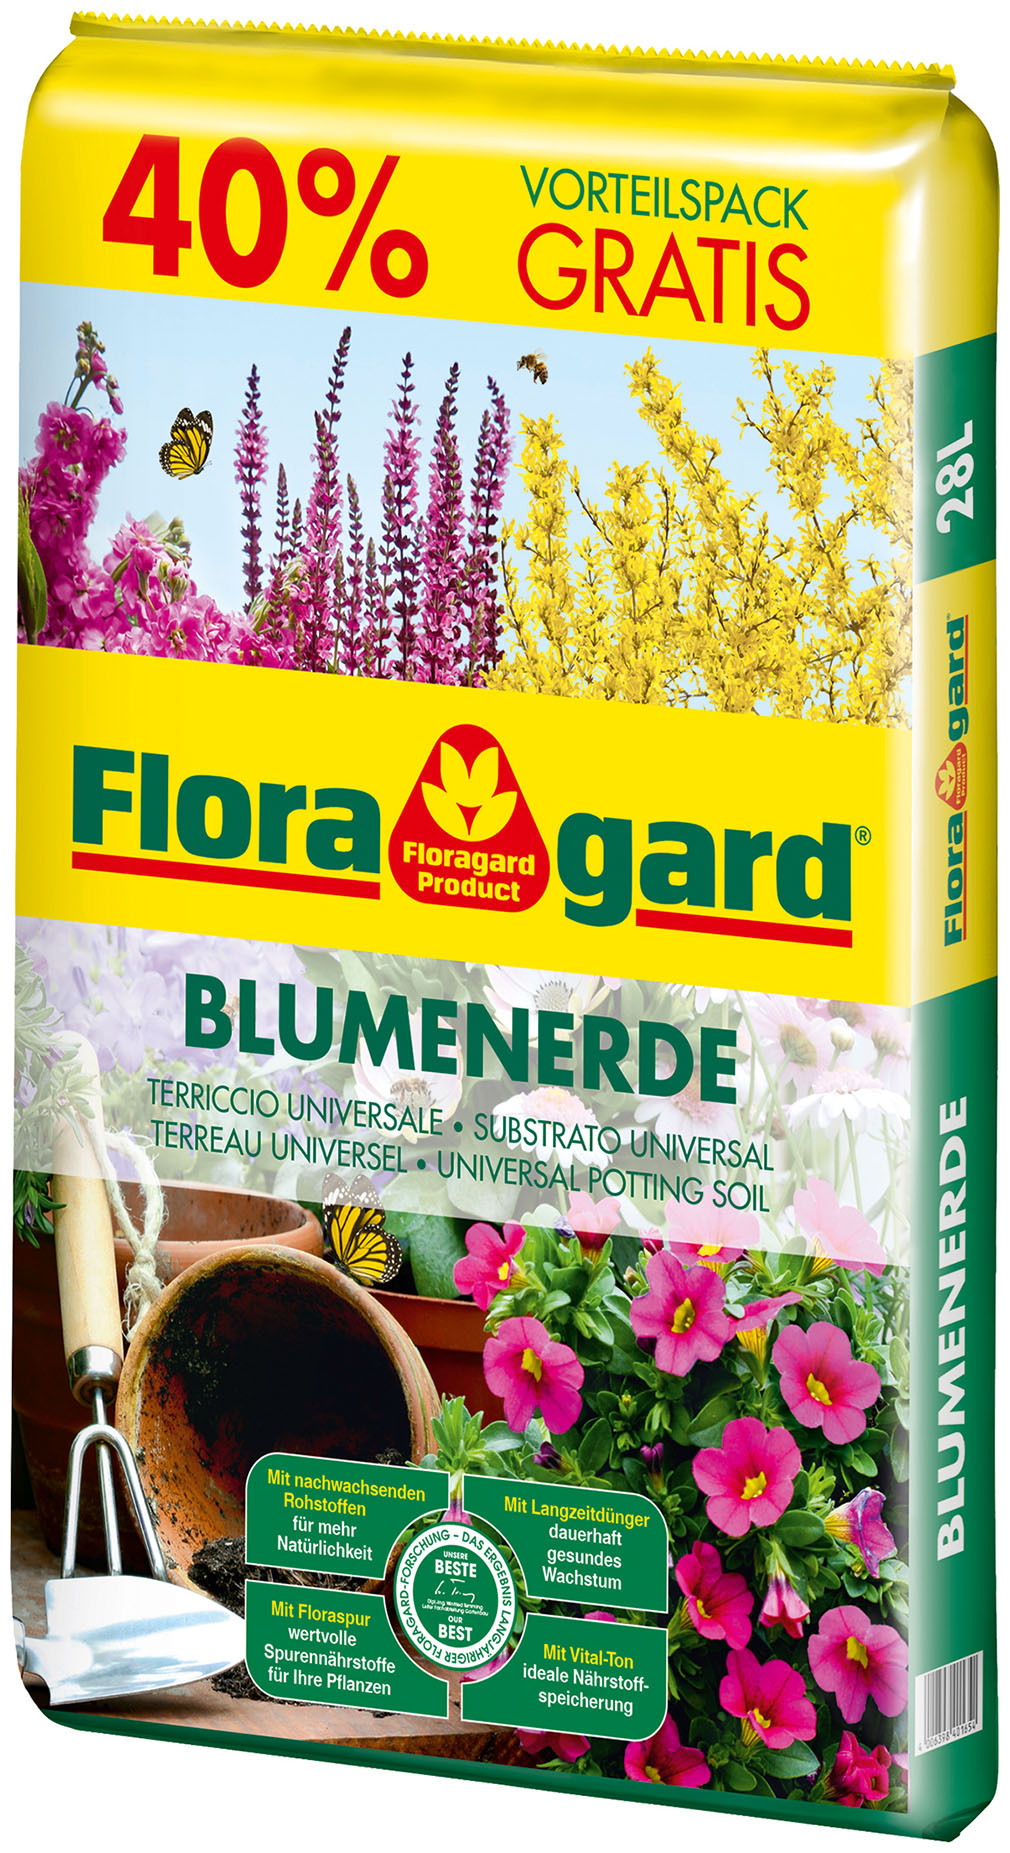 Floragard Vertriebs GmbH Blumenerde 20L + 40% gratis